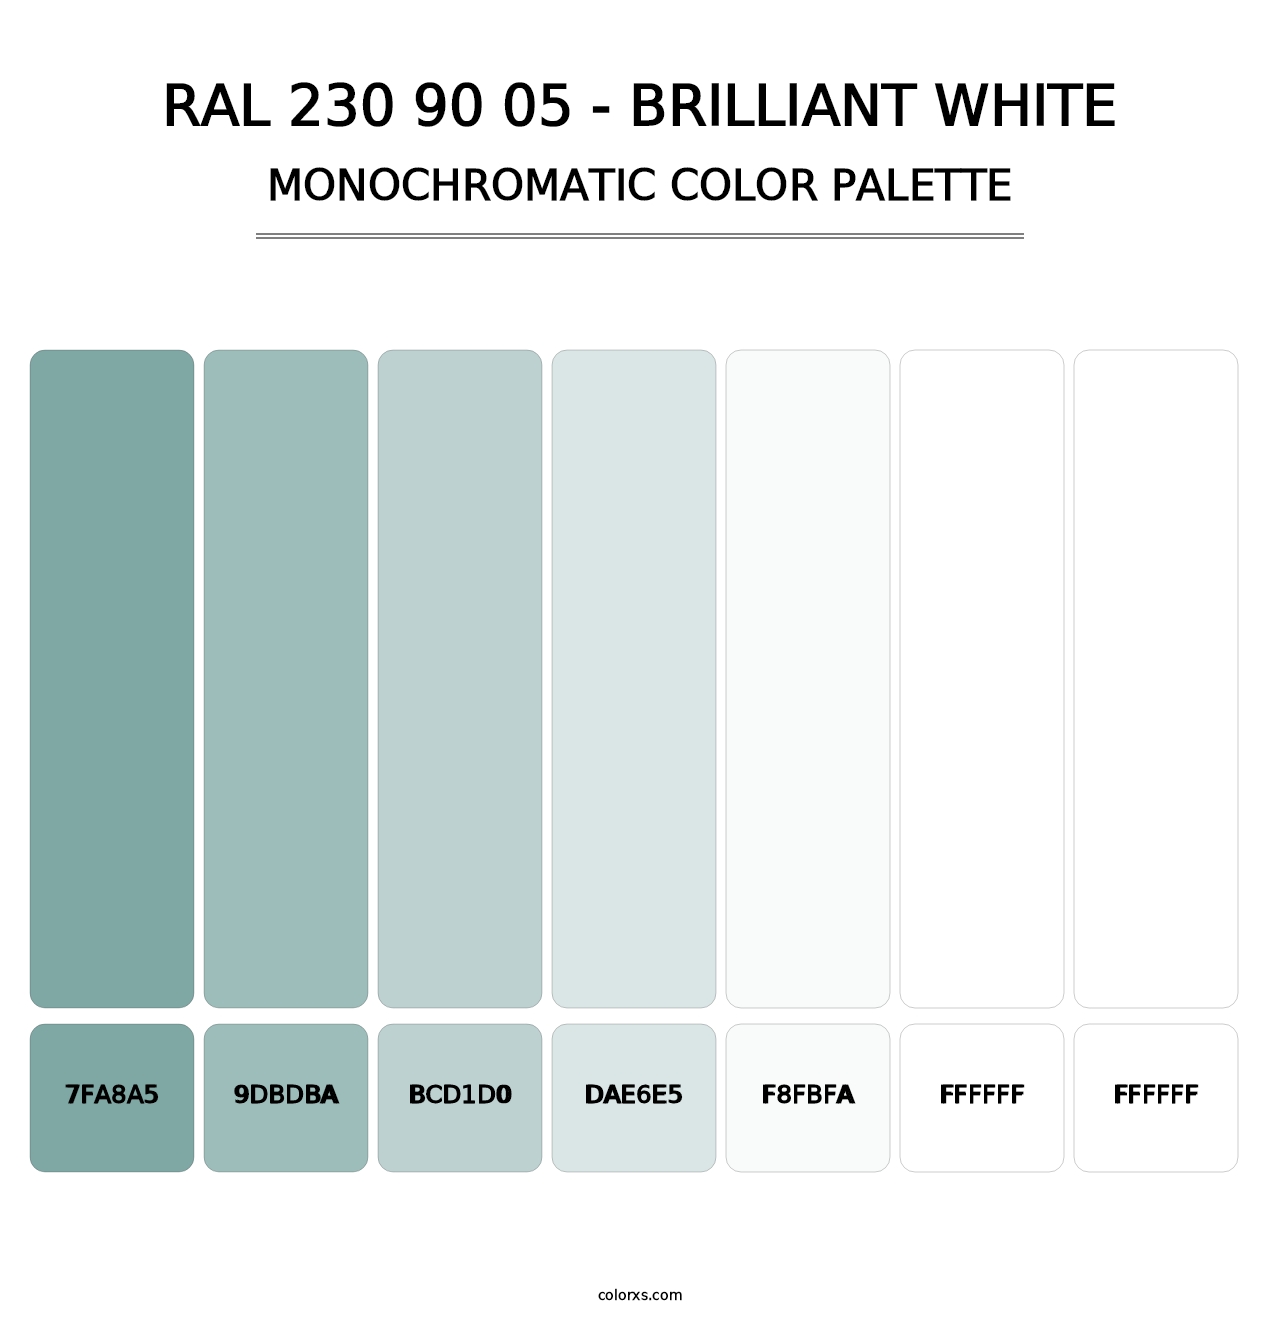 RAL 230 90 05 - Brilliant White - Monochromatic Color Palette